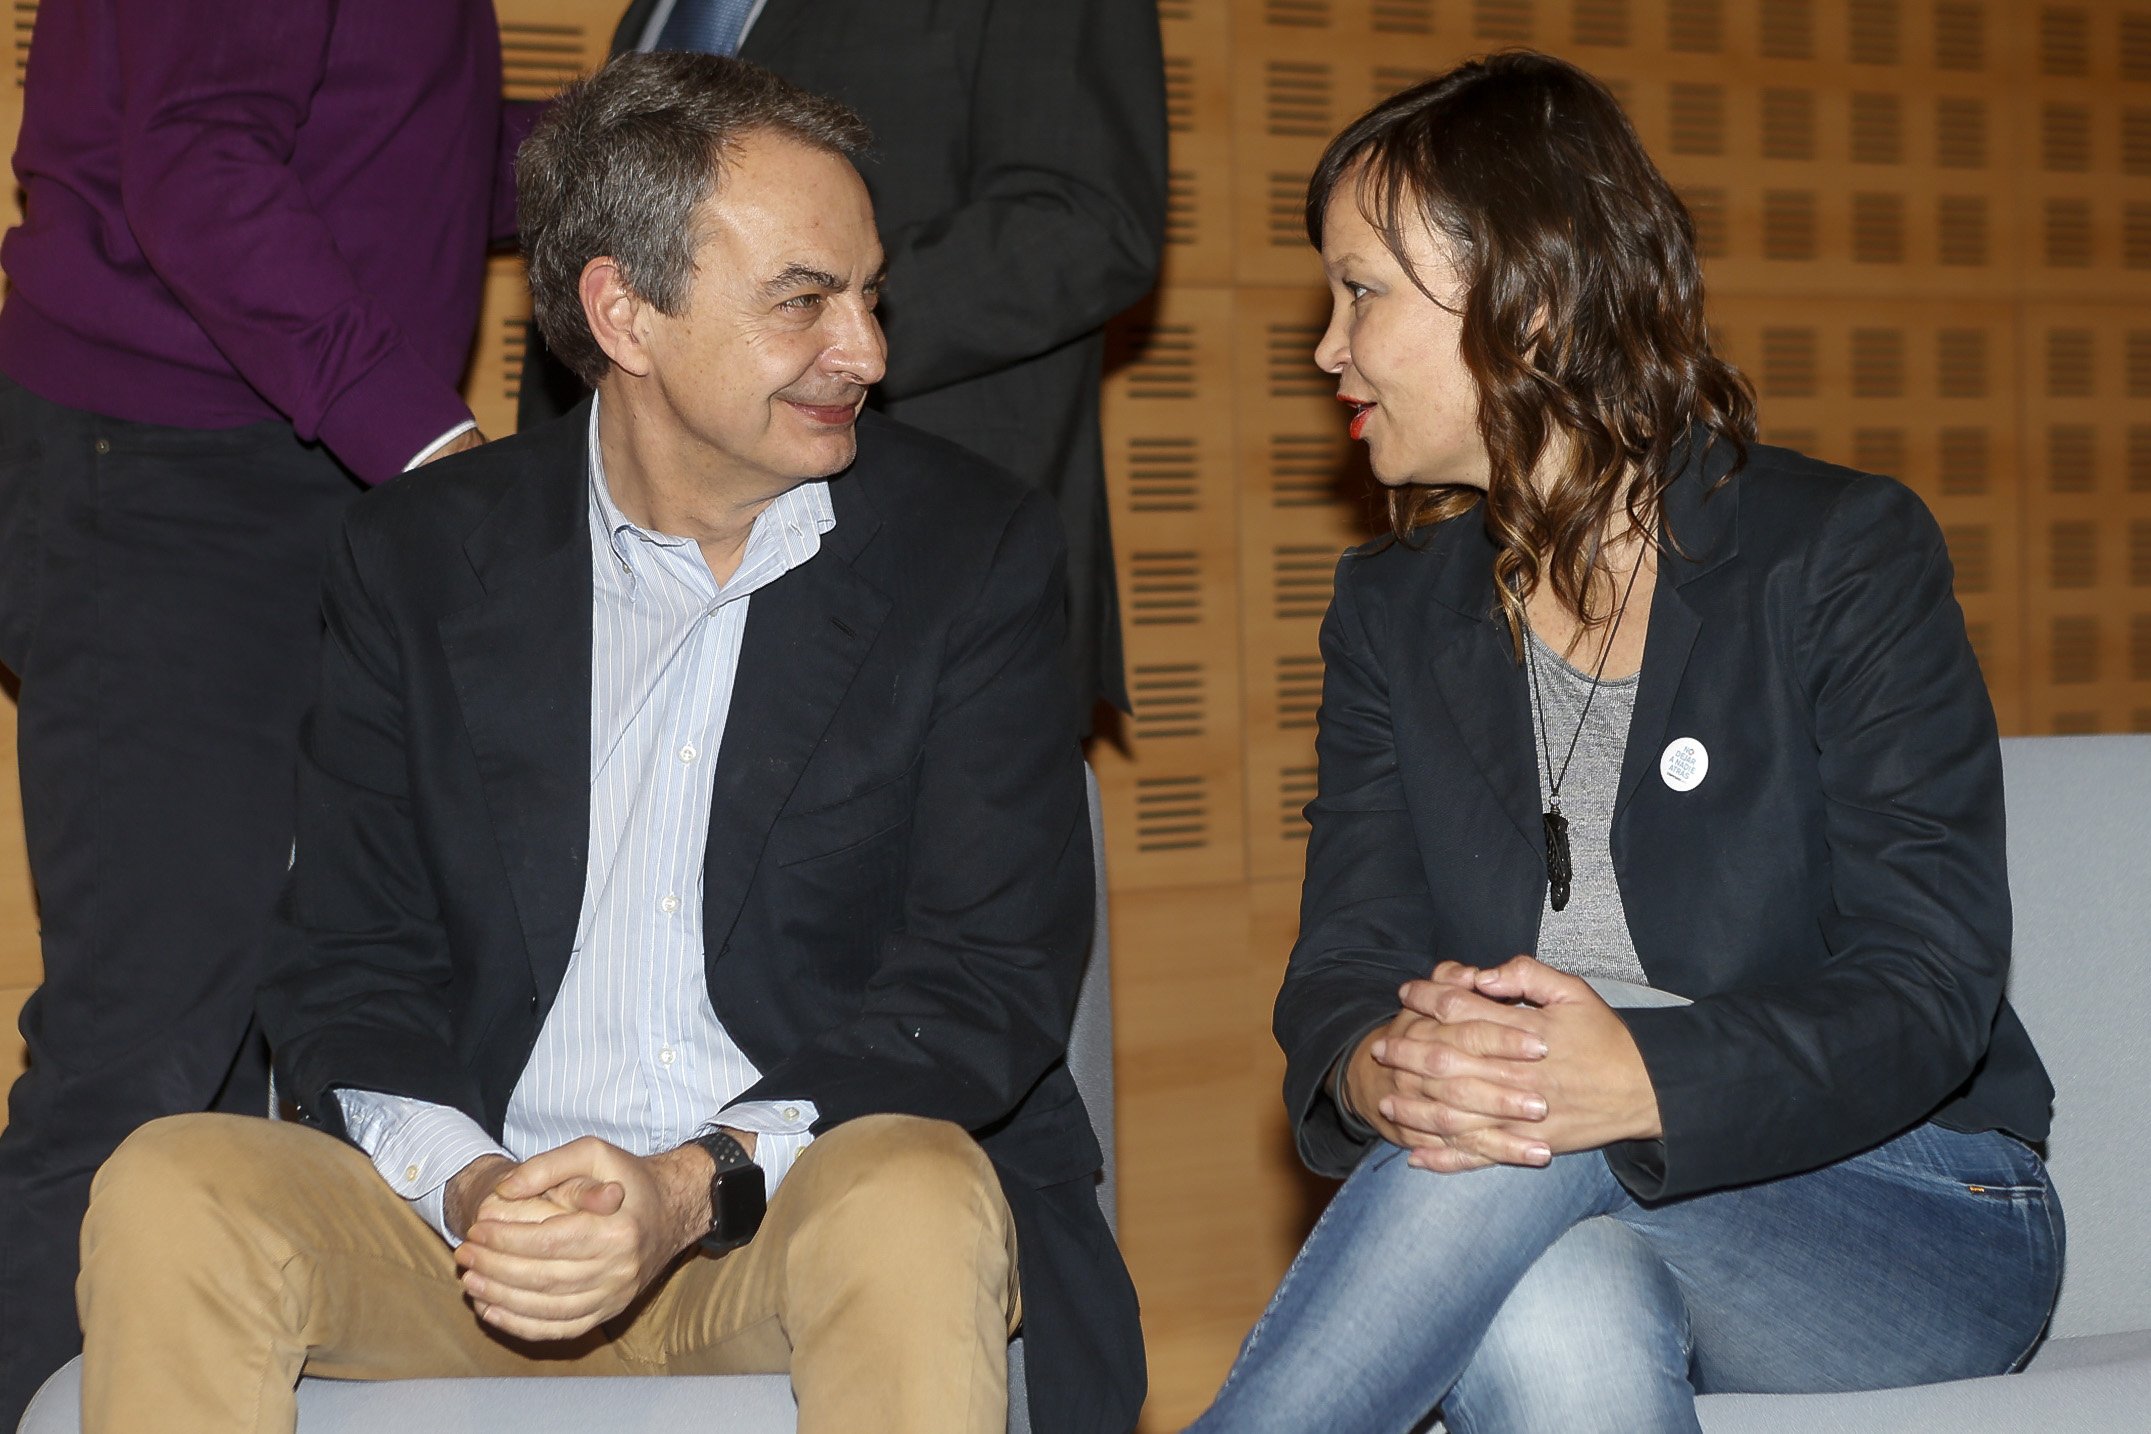 Escándalo en Madrid al retratar a Zapatero desnudo y con un miembro descomunal